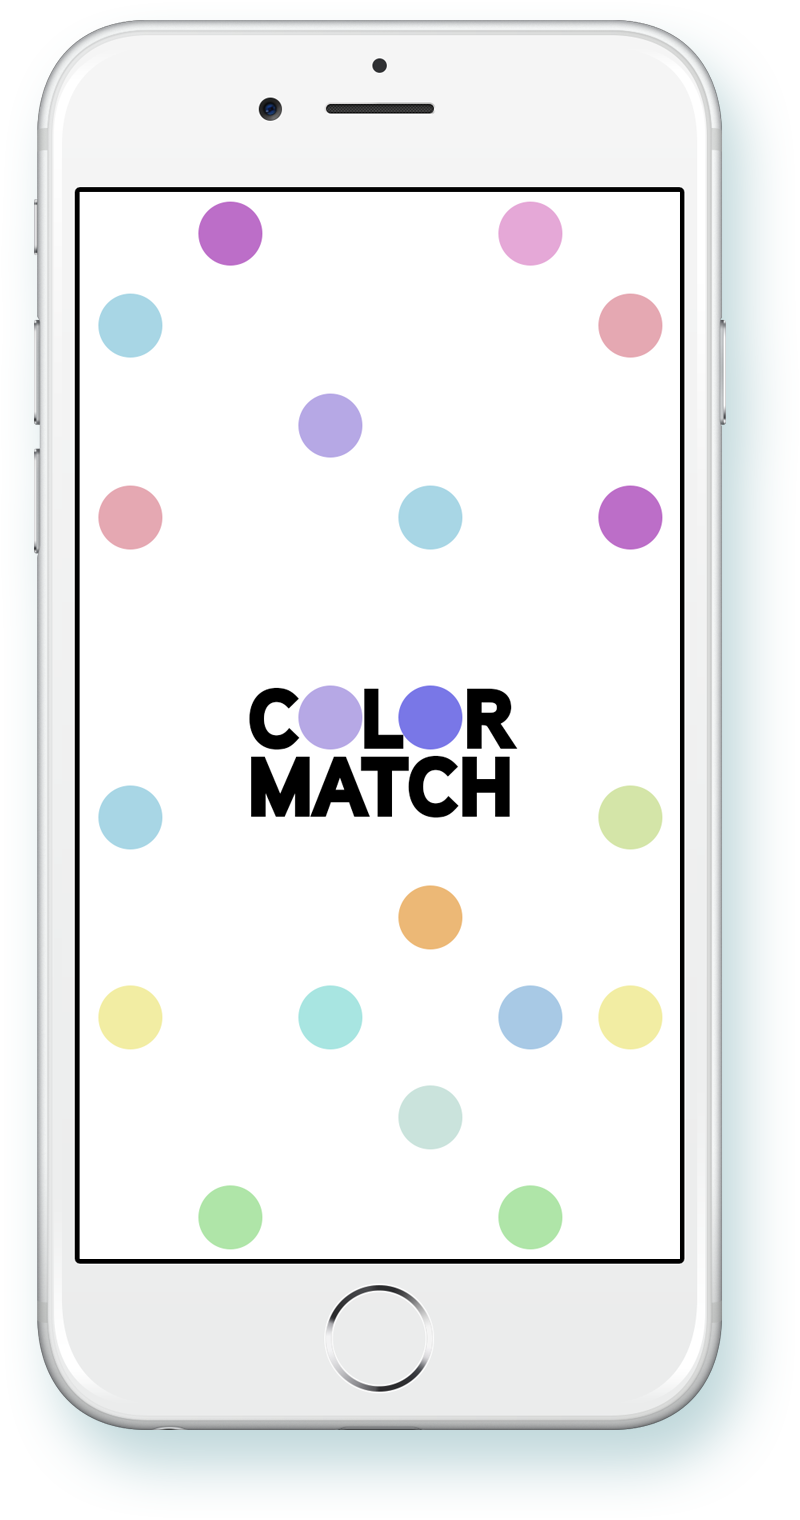 behr color match app